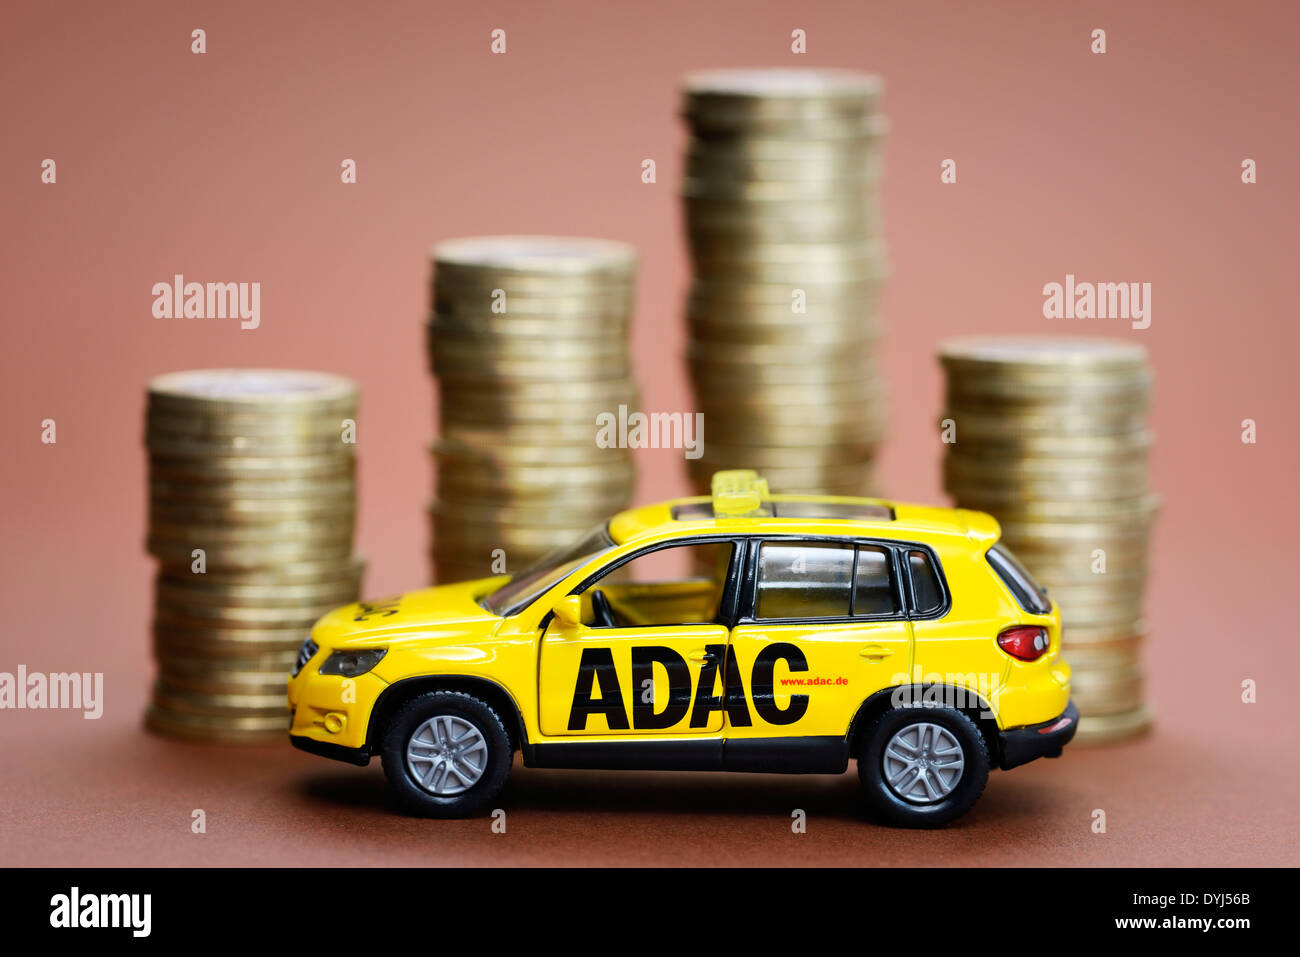 ADAC Miniaturfahrzeug und Münzstapel Stock Photo